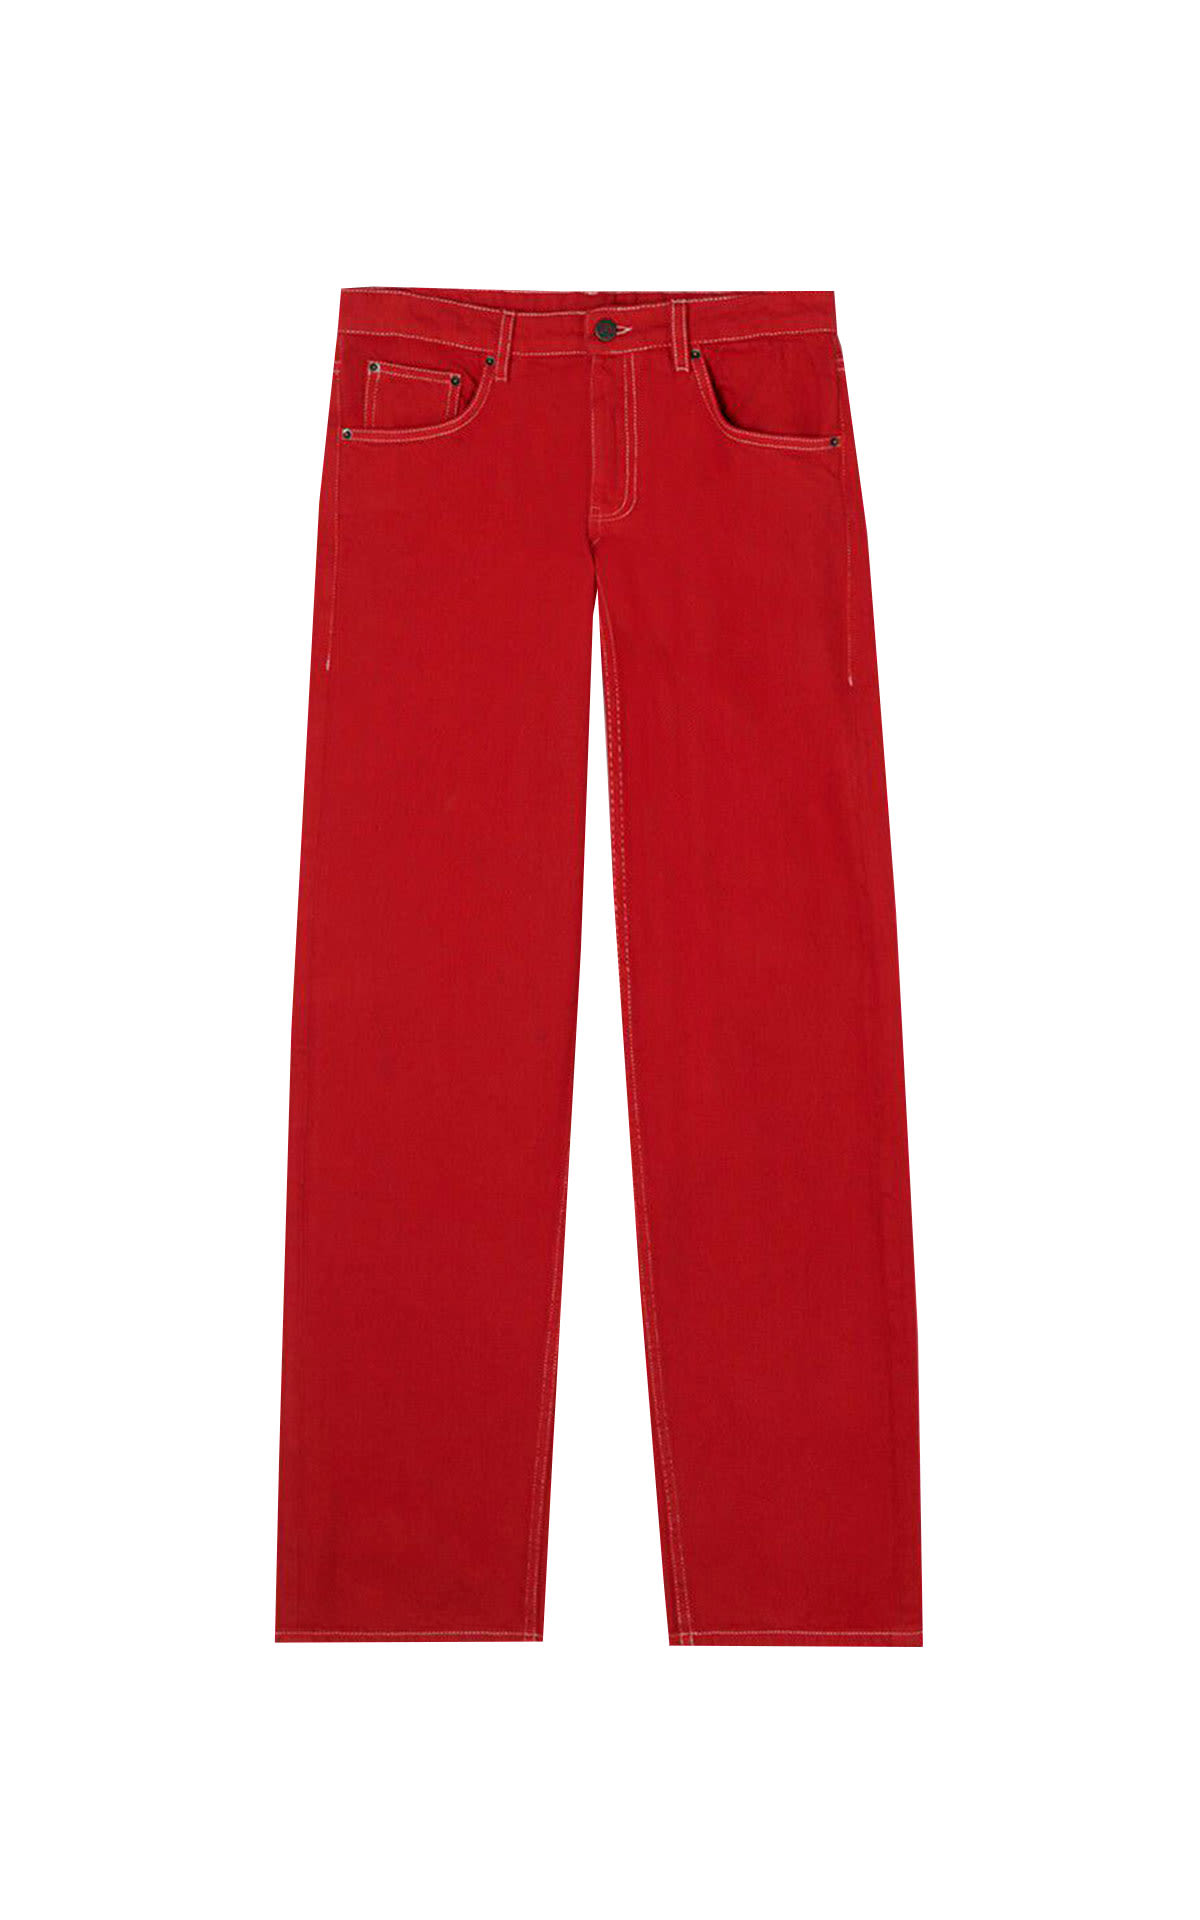 American Vintage Red pants